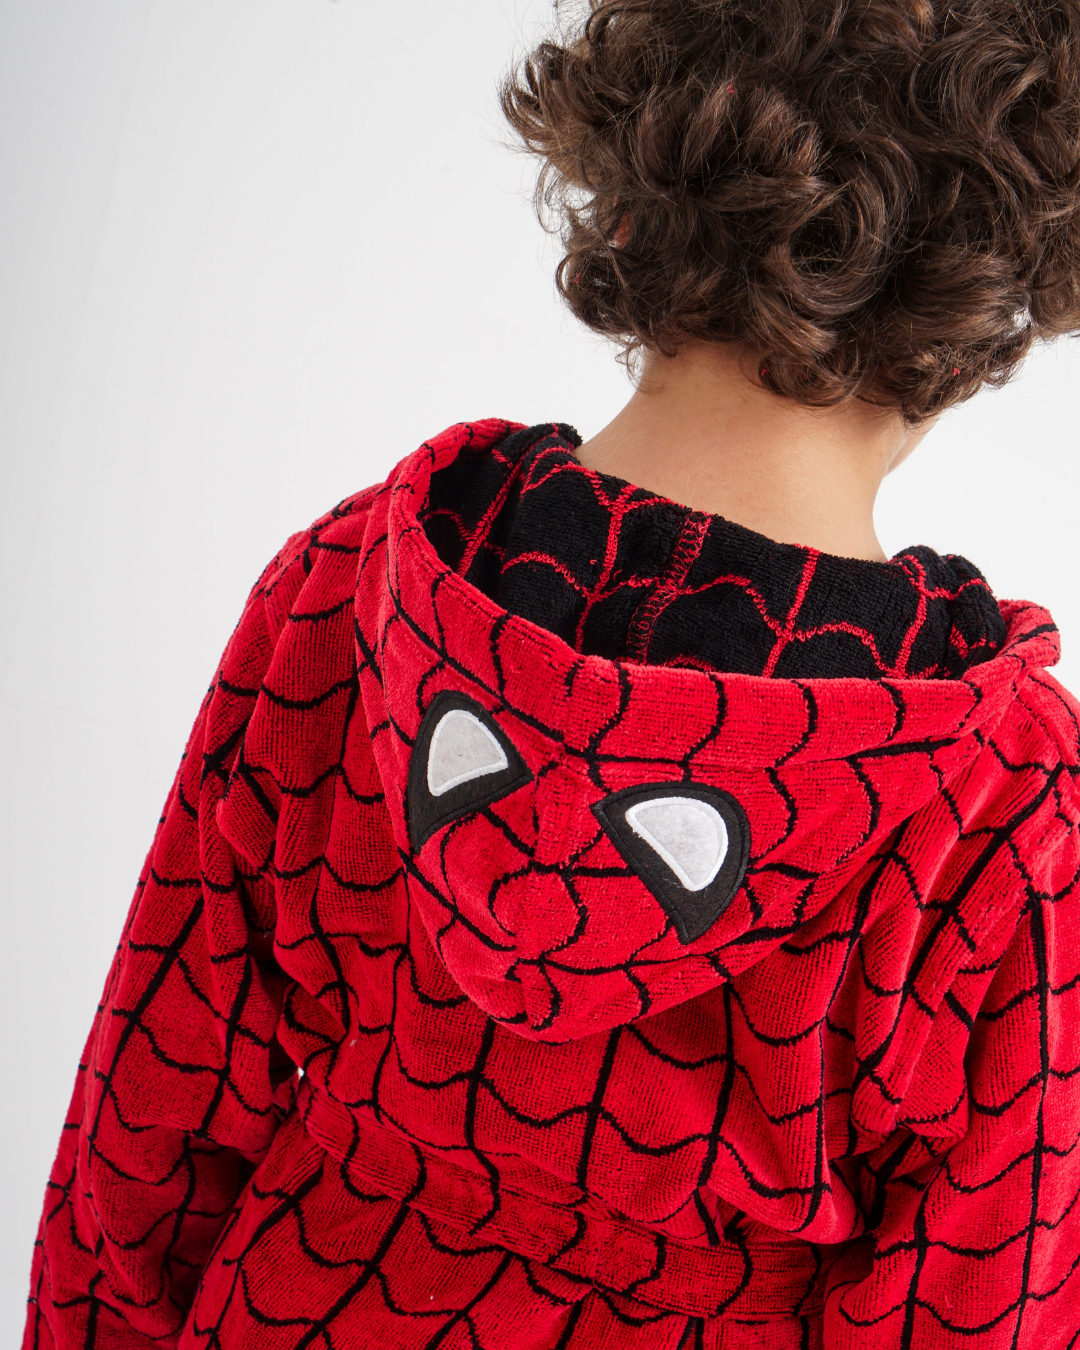 My children's bathrobe, Spider-Man